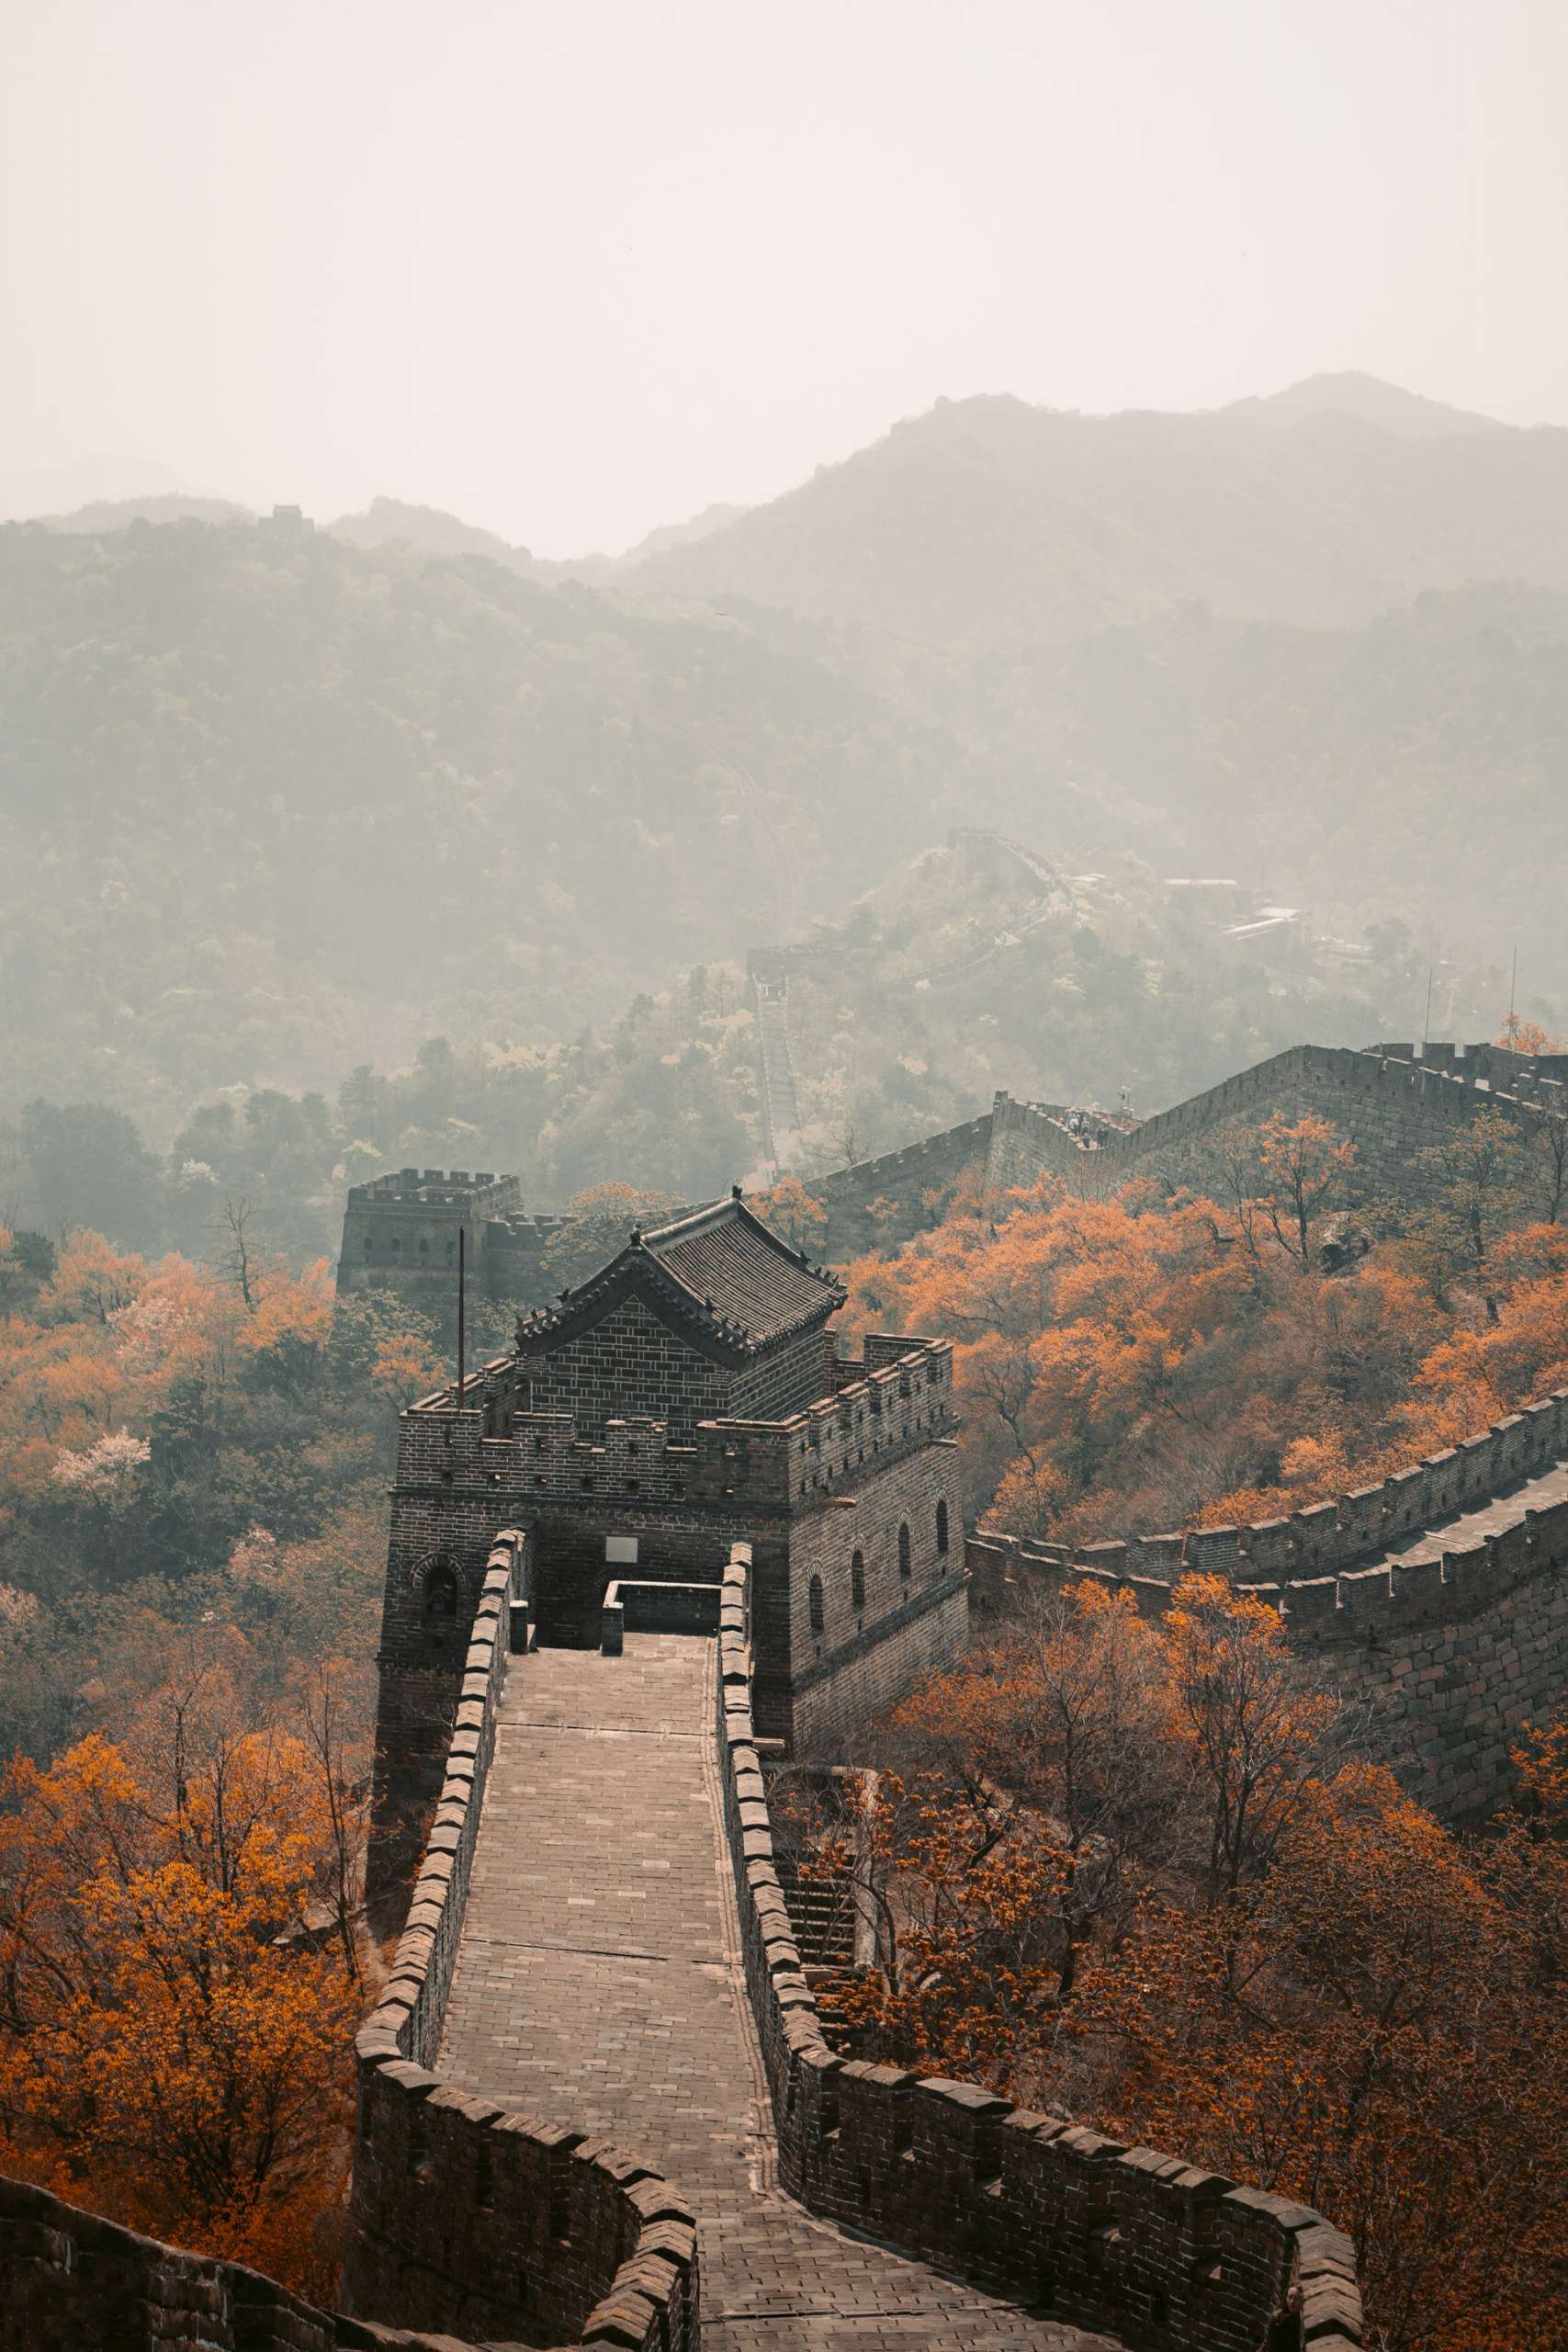 Visit Great Wall of China